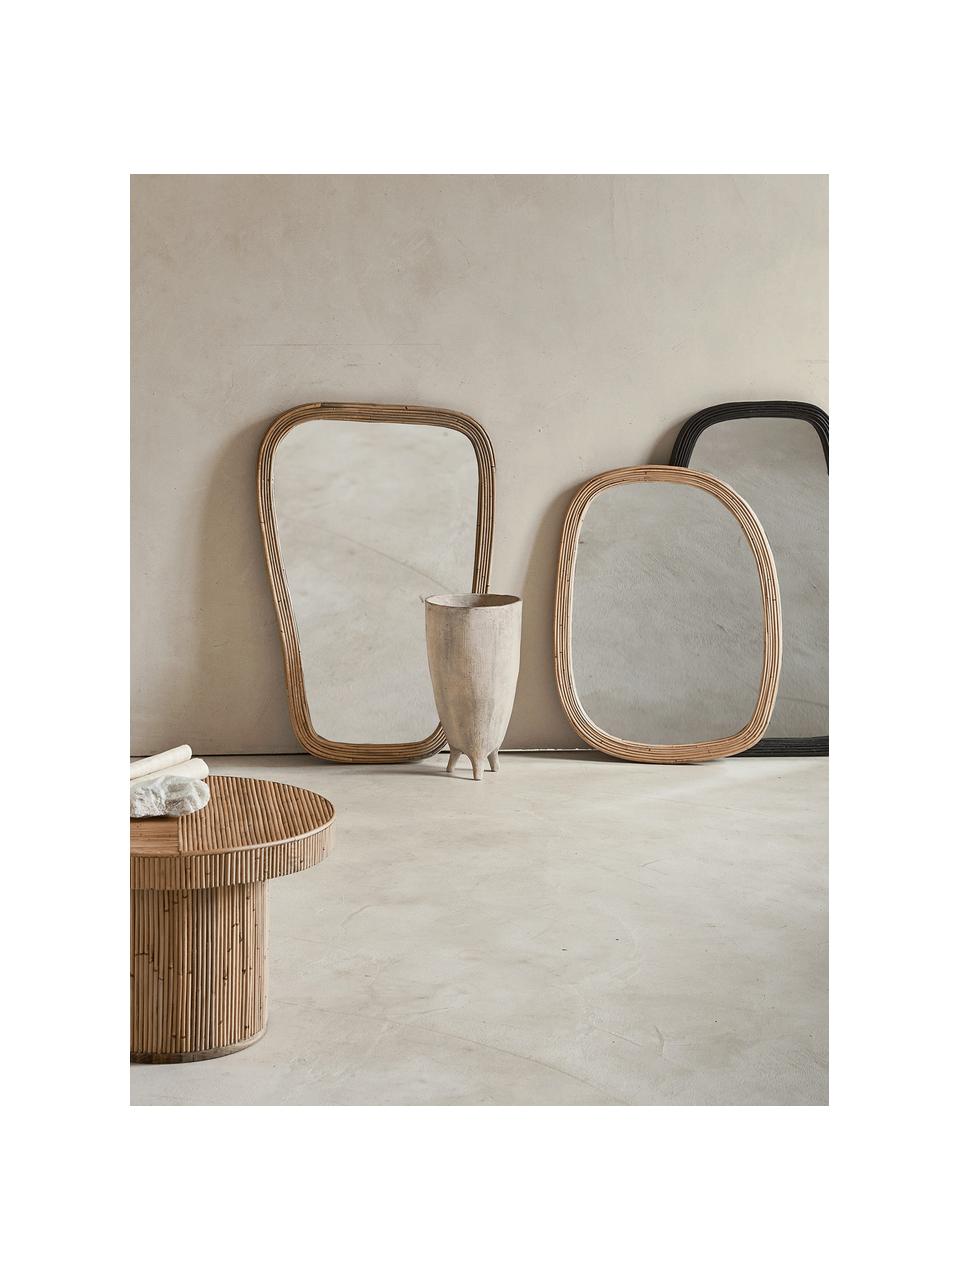 Handgemachter Anlehnspiegel Organic mit Rattanrahmen, Rahmen: Rattan, Spiegelfläche: Spiegelglas, Helles Holz, B 61 x H 120 cm